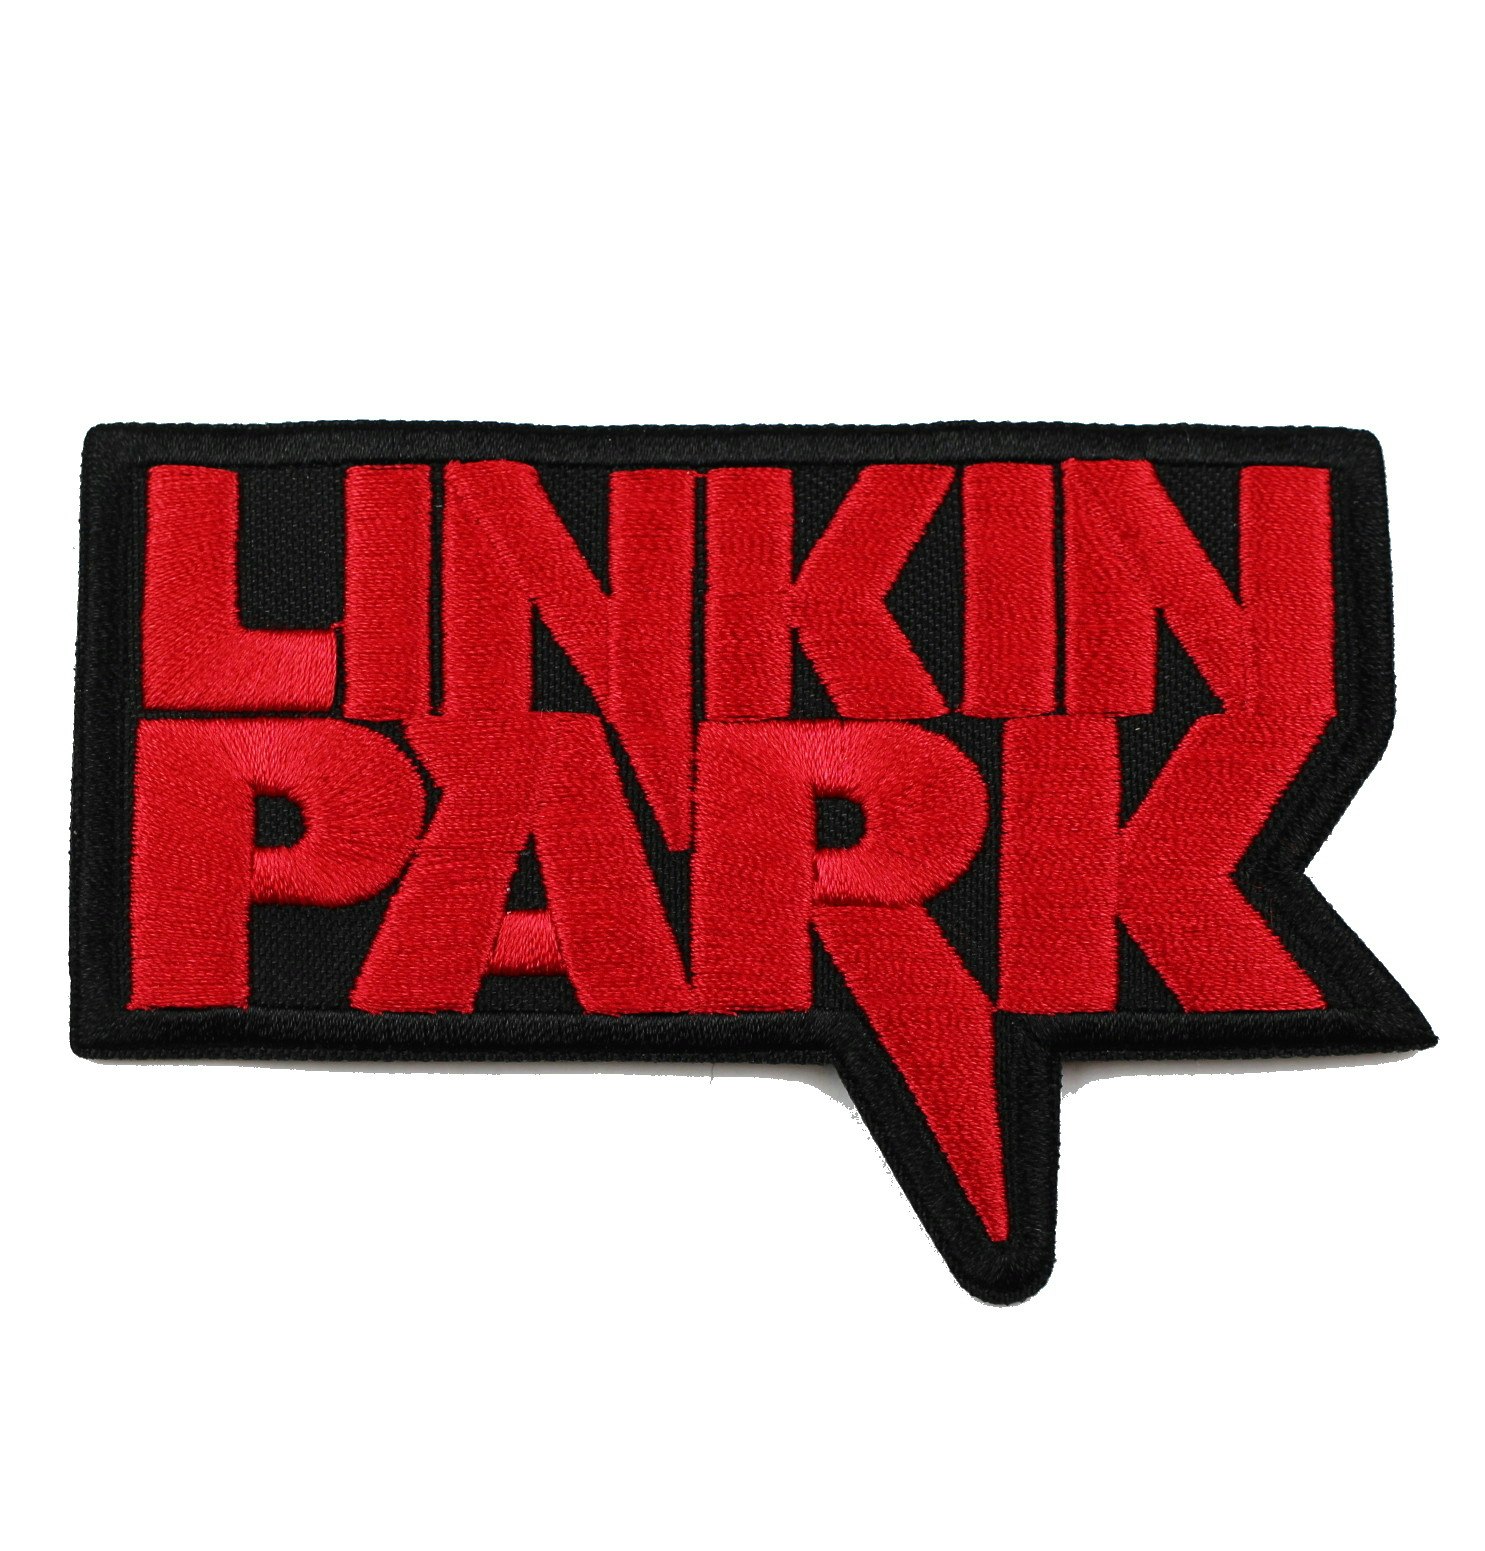 Linkin park logo patch